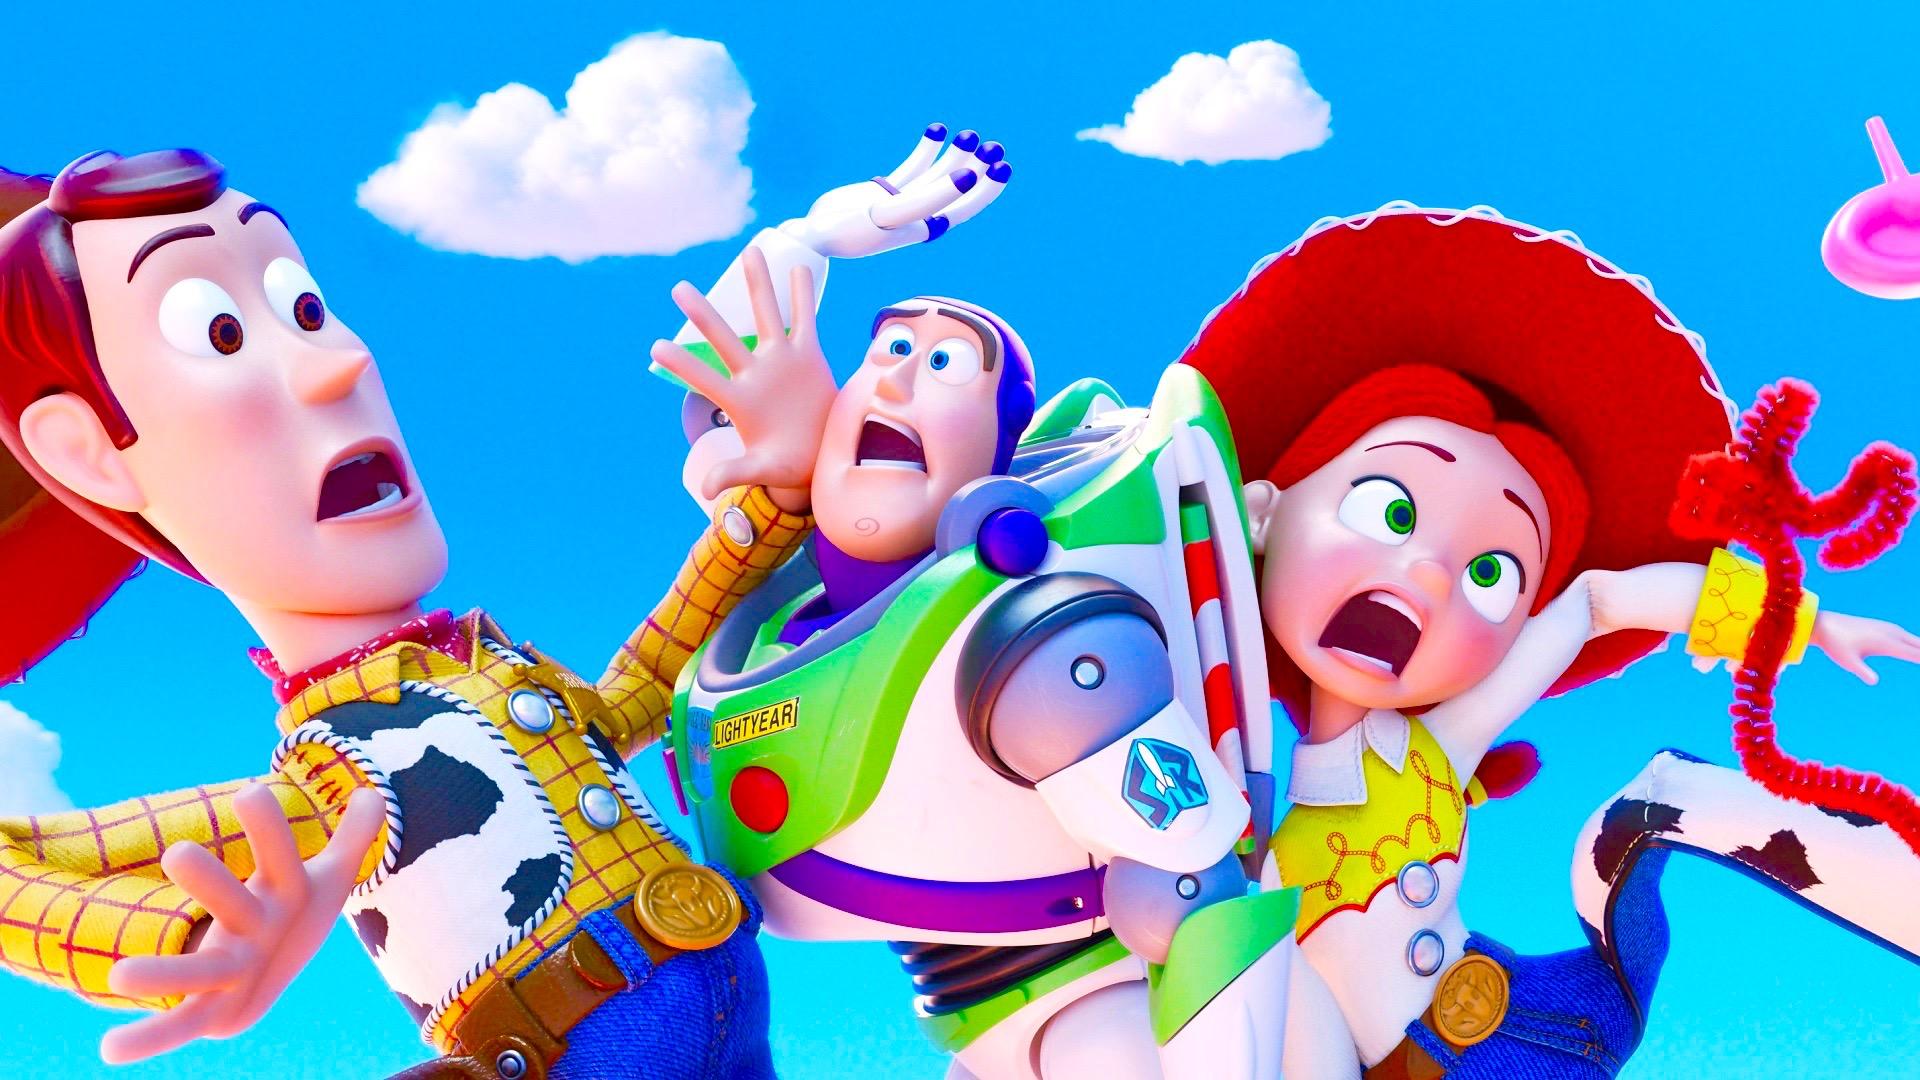 Movie Toy Story 4 Woody Jessie Buzz Lightyear HD Wallpaper